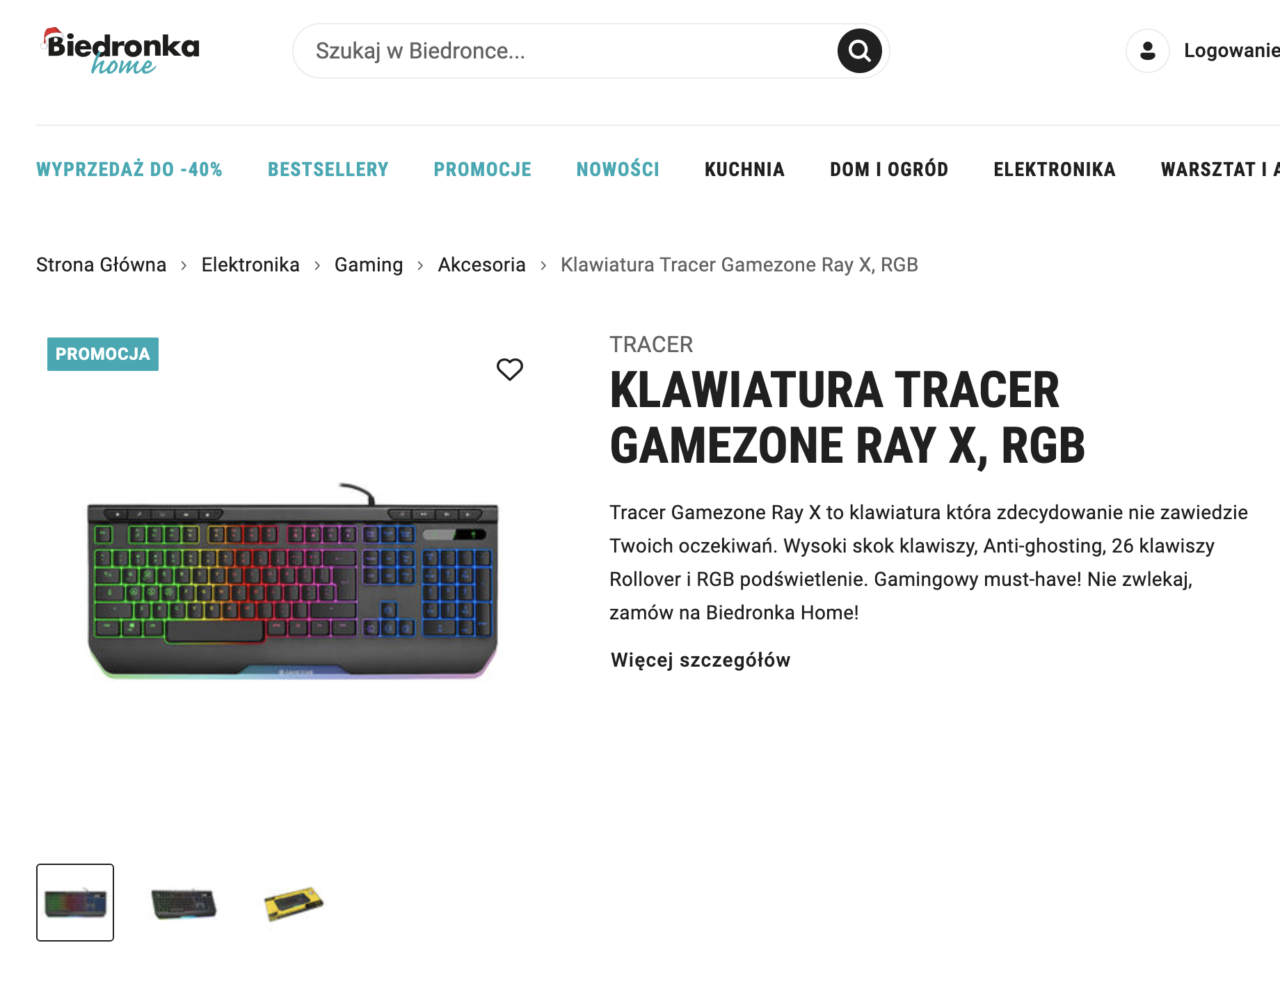 Strona internetowa sklepu Biedronka z promocją klawiatury Tracer Gamezone Ray X, RGB, wyświetlająca obraz klawiatury z kolorowym podświetleniem LED i opisem produktu.